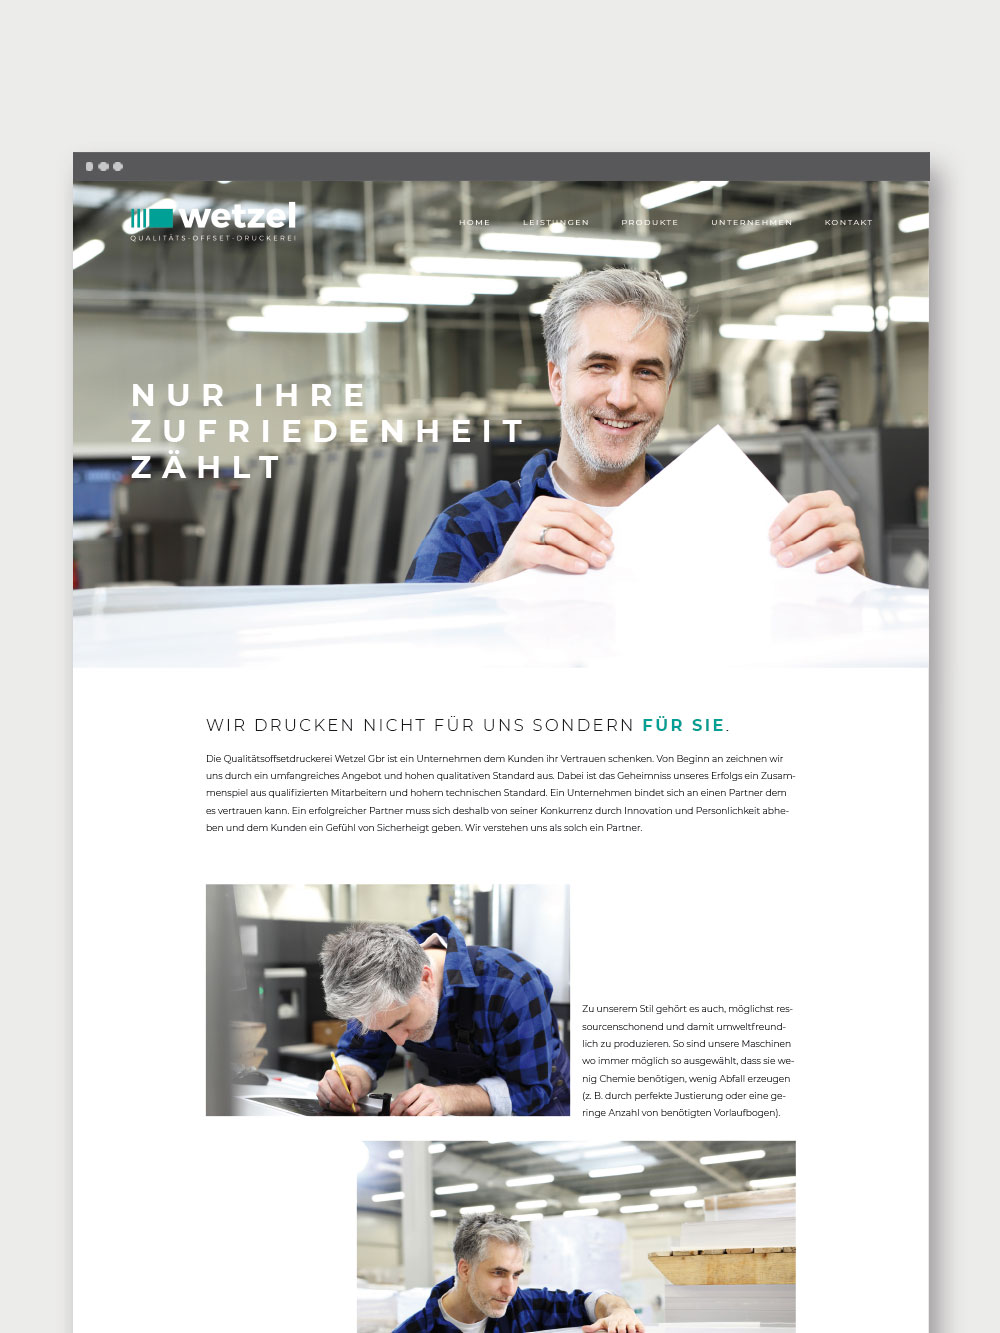 Sautter Werbung & Design Designagentur Rems-Murr-Kreis, Projekt: Wetzel die Druckerei - Branding, Digital, Print